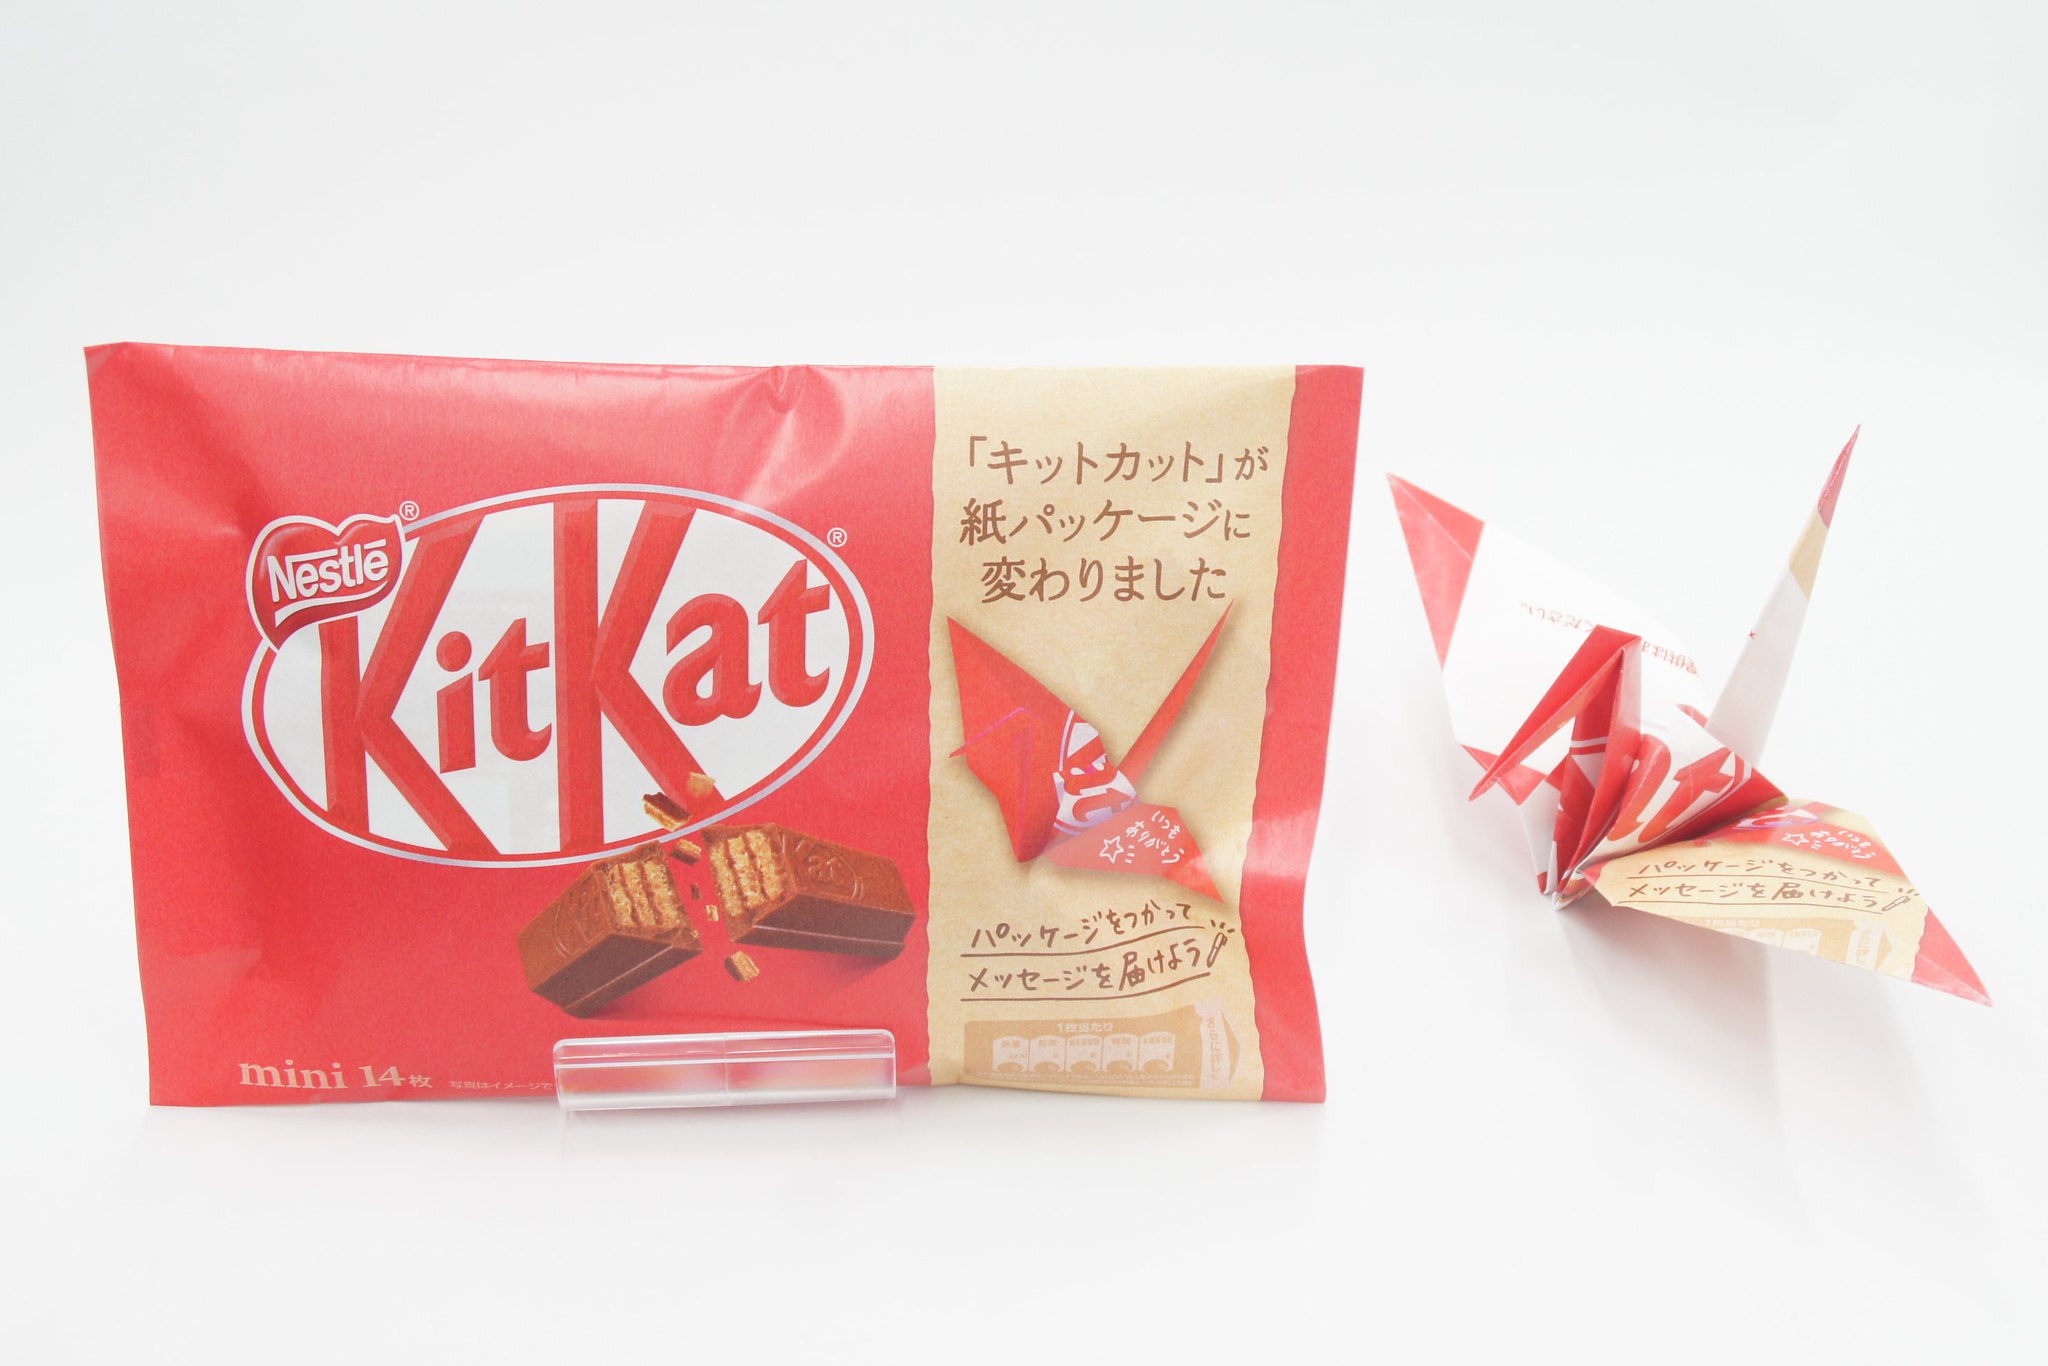 Die neue Papierverpackung von KitKat in Japan.